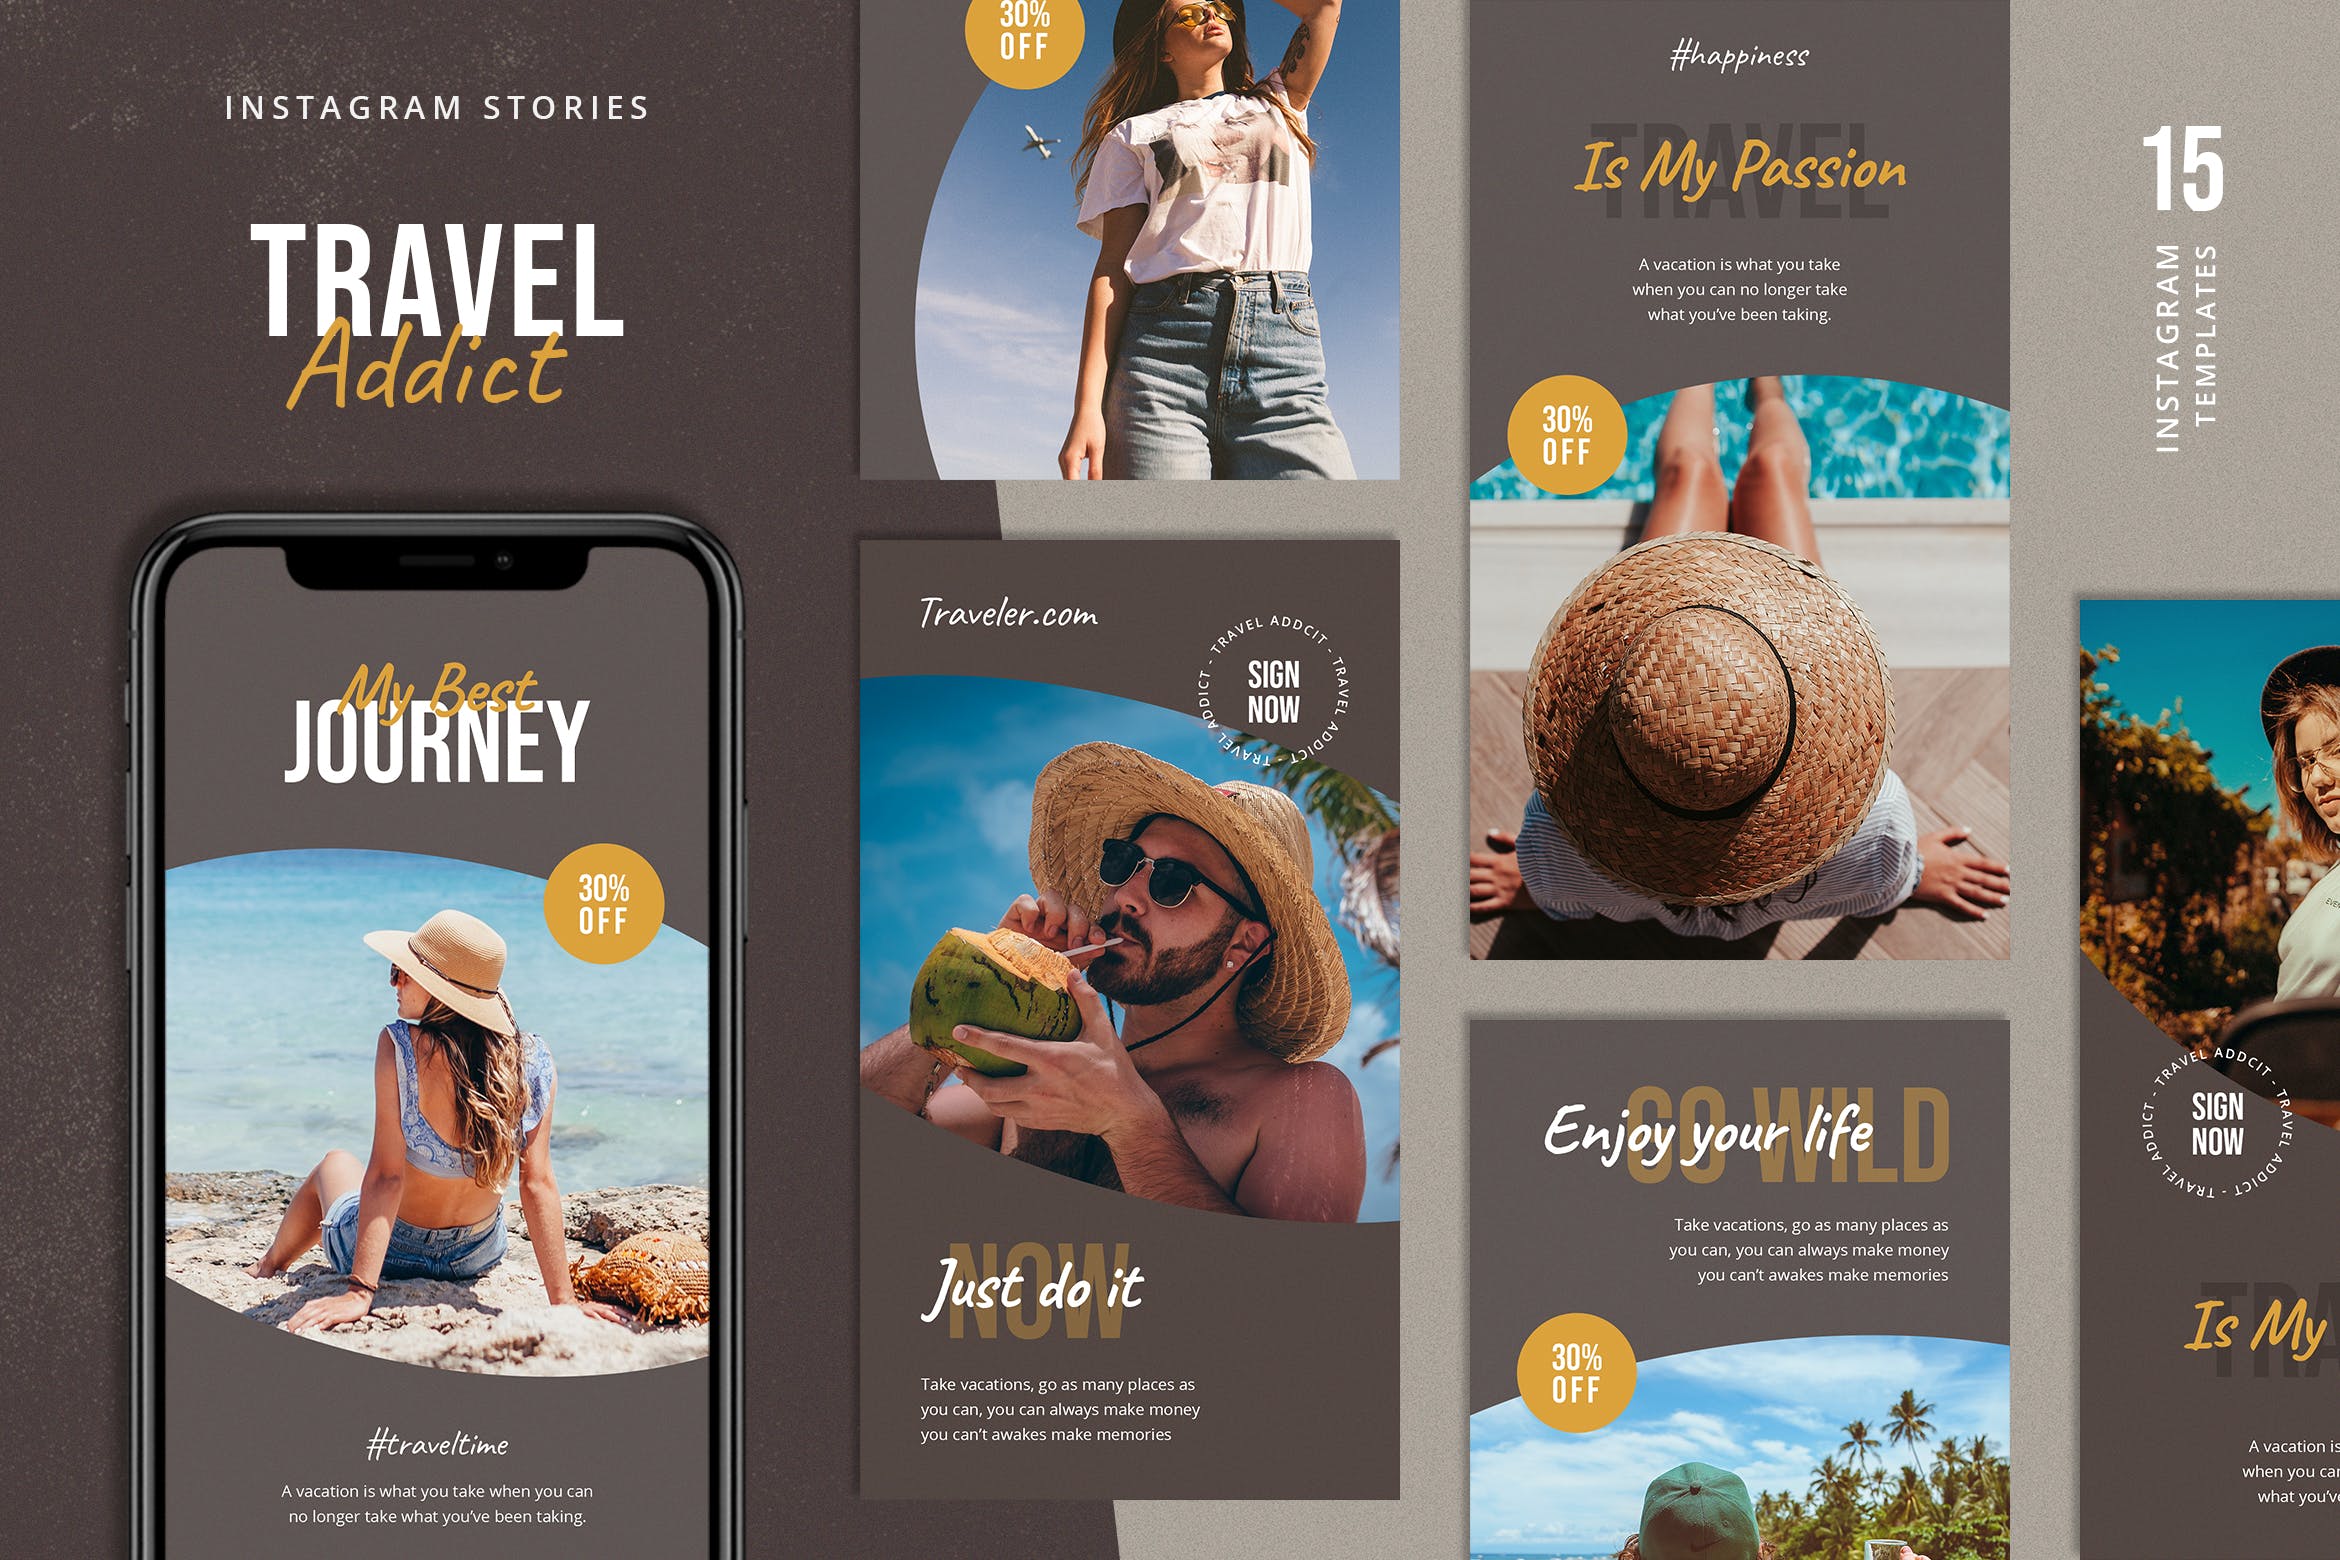 夏日 旅行 主题 社交媒体Instagram故事模板 Travel Instagram Stories Template设计素材模板